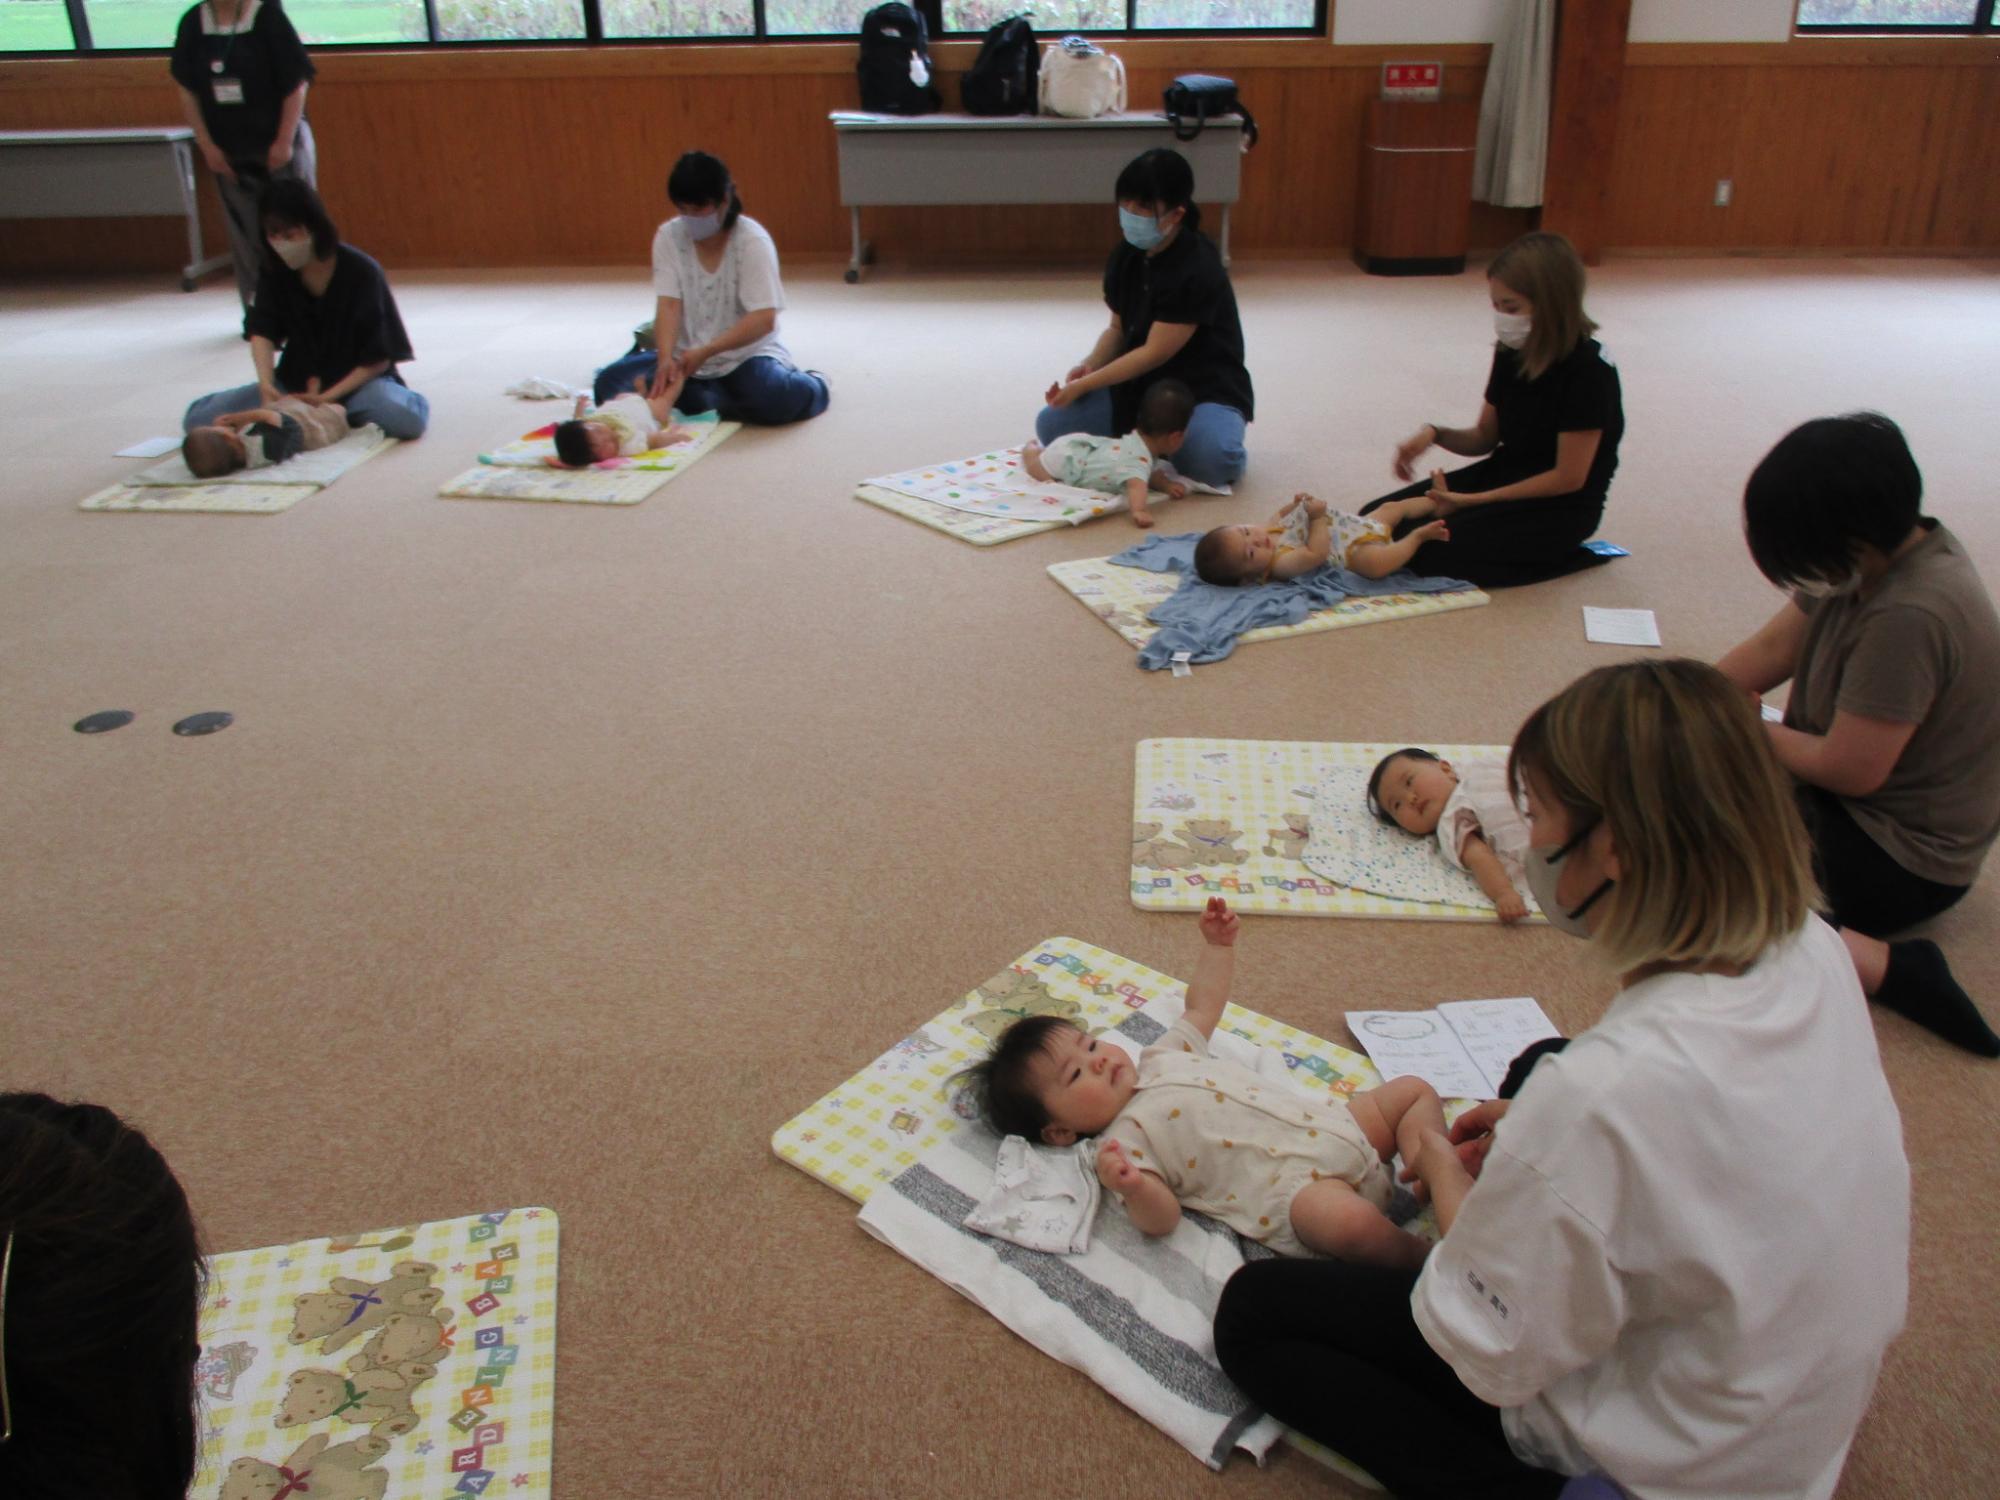 参加者が自身の赤ちゃんにベビーマッサージを実践し、リラックスした雰囲気の写真